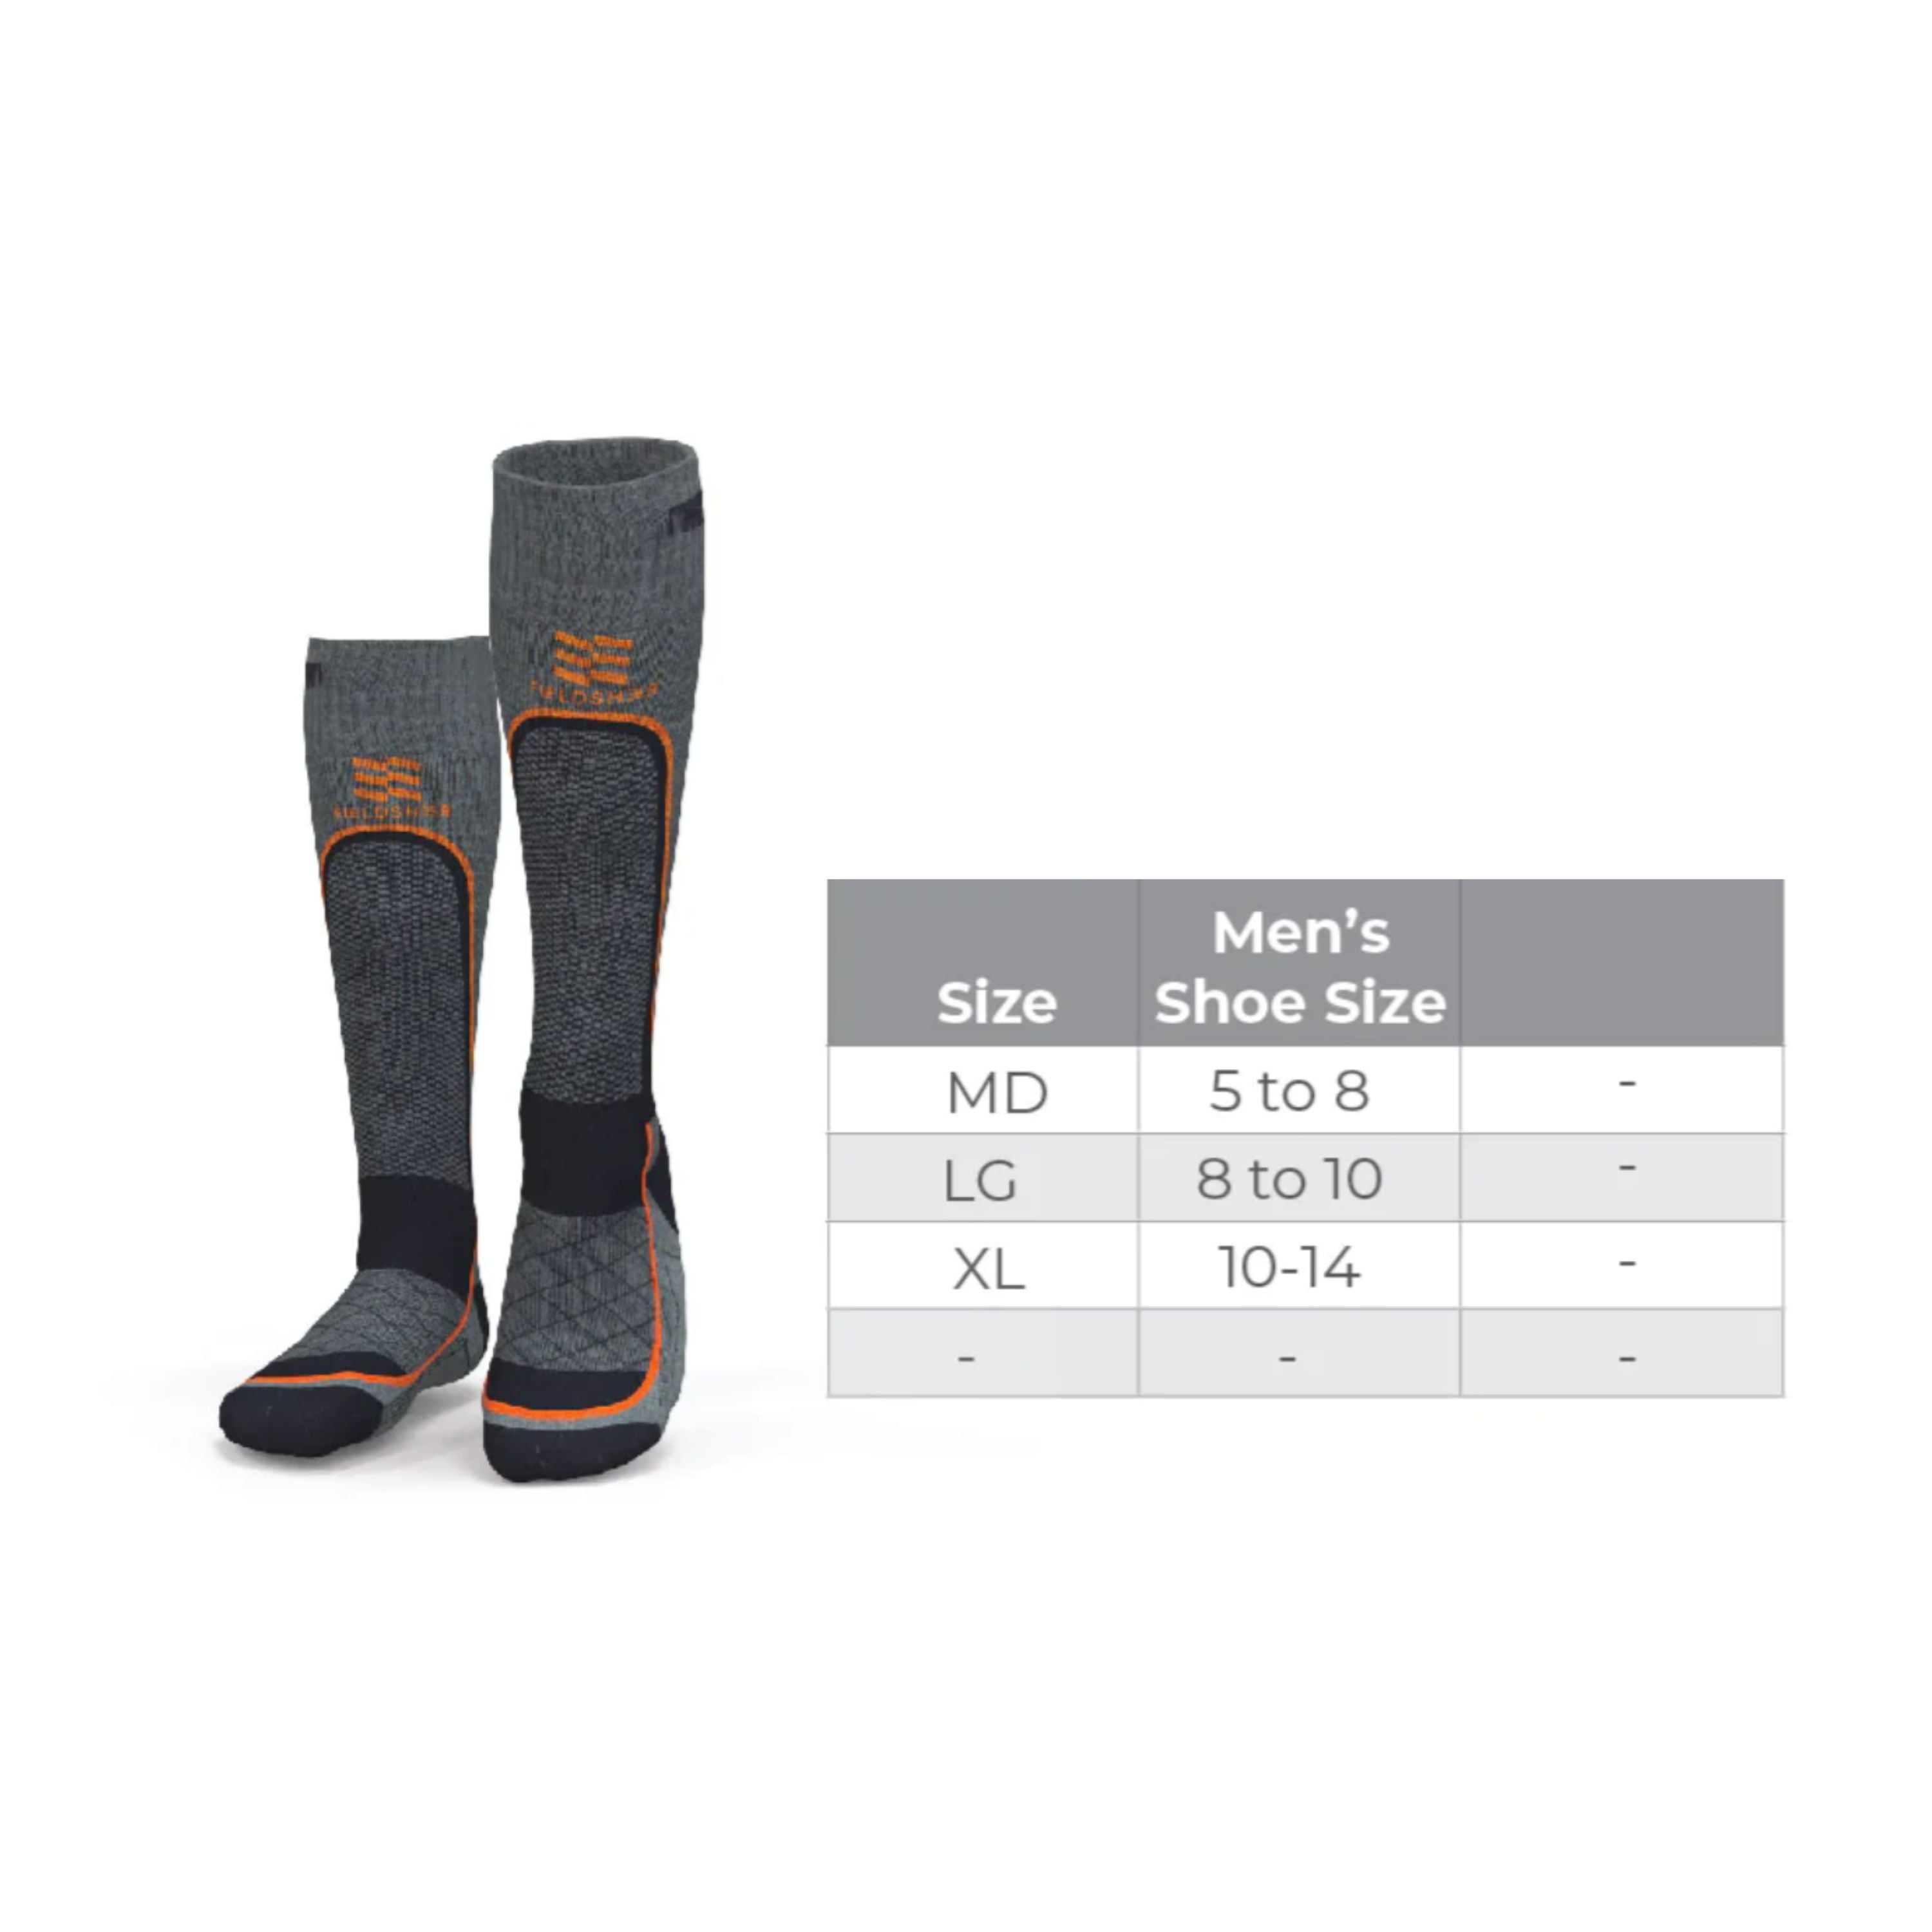 Premium 2.0 Merino heated socks - Men's